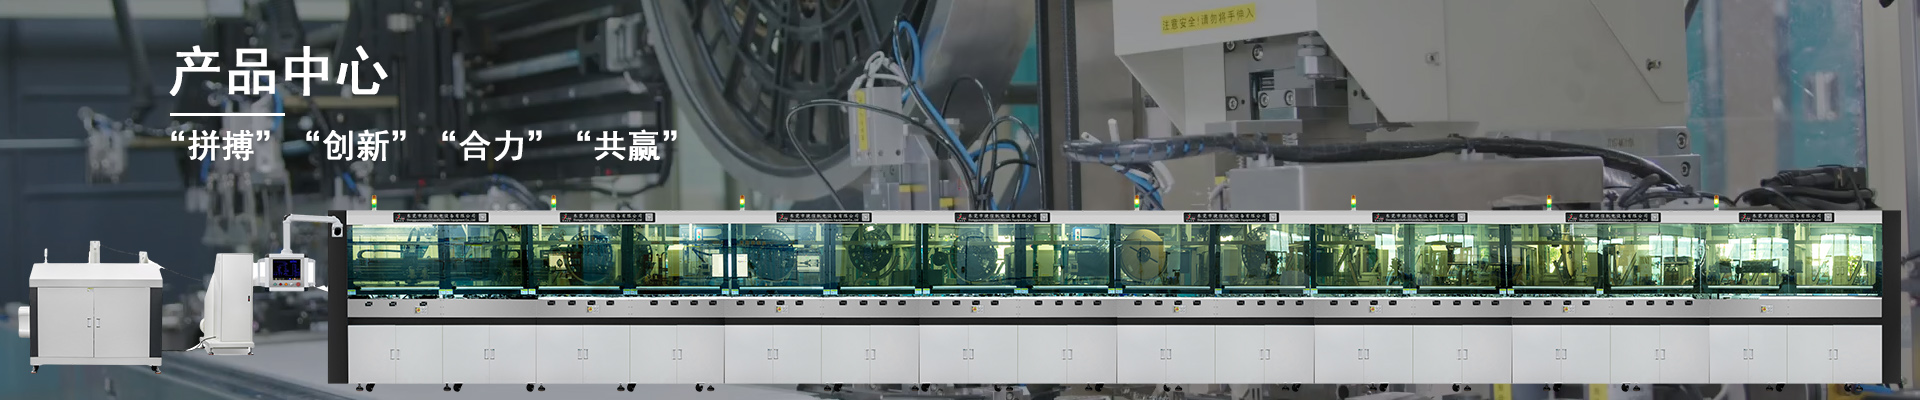 网络变压器检测包装一体-东莞市捷信机电设备有限公司